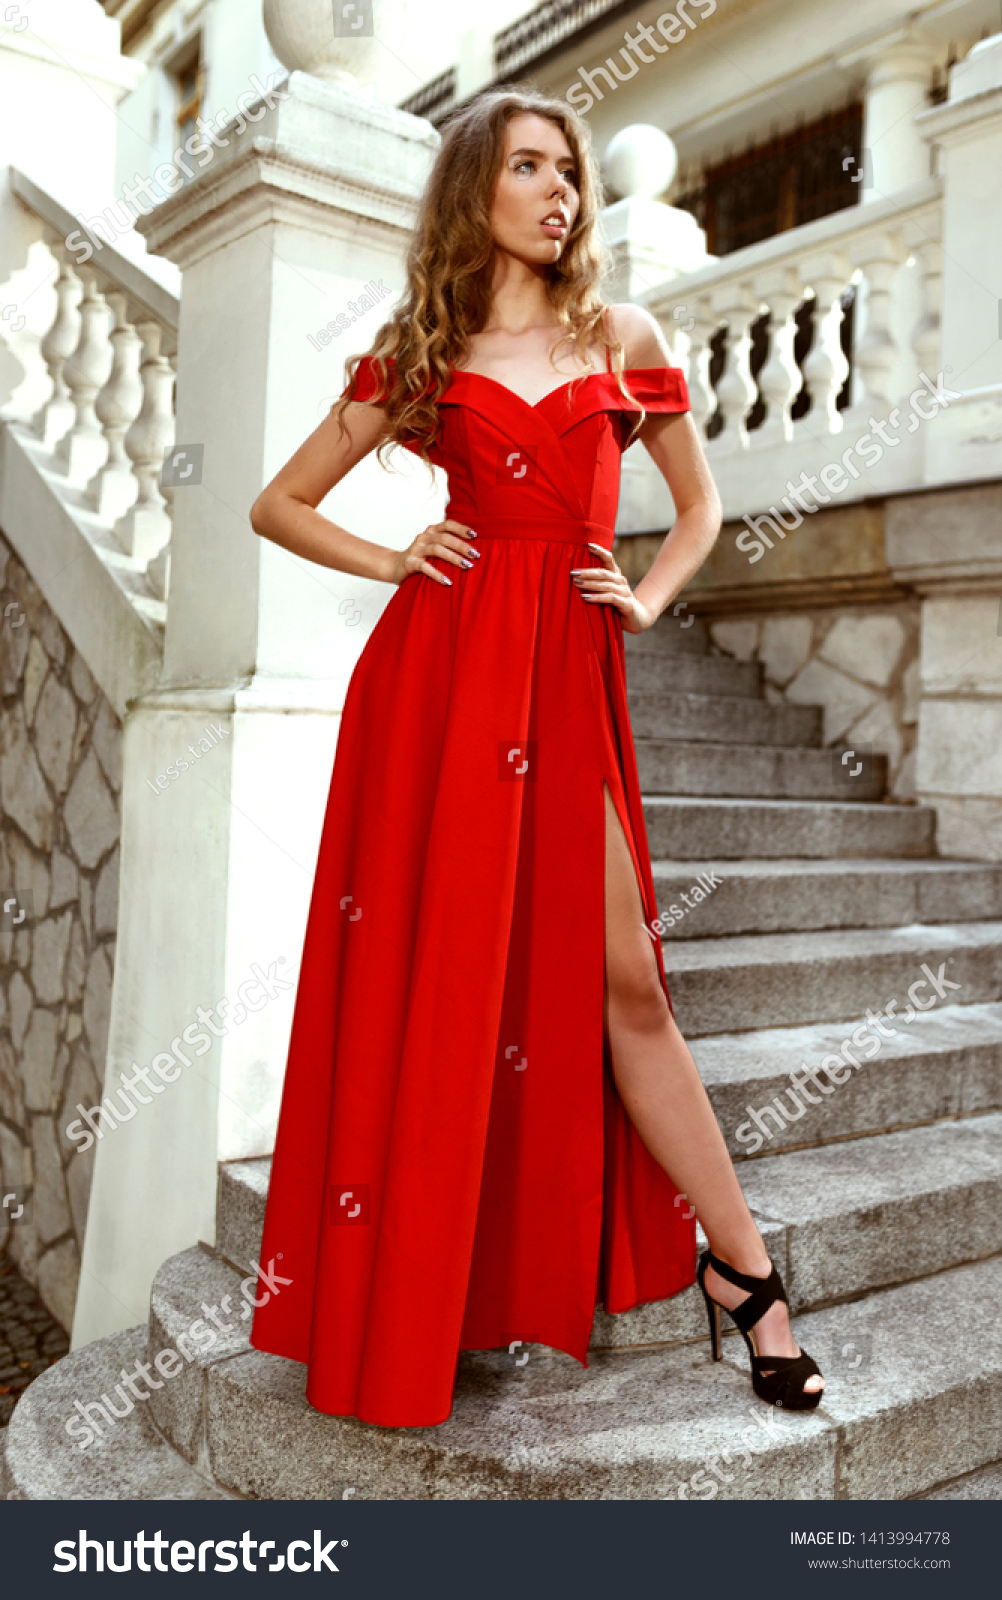 high heel red dress